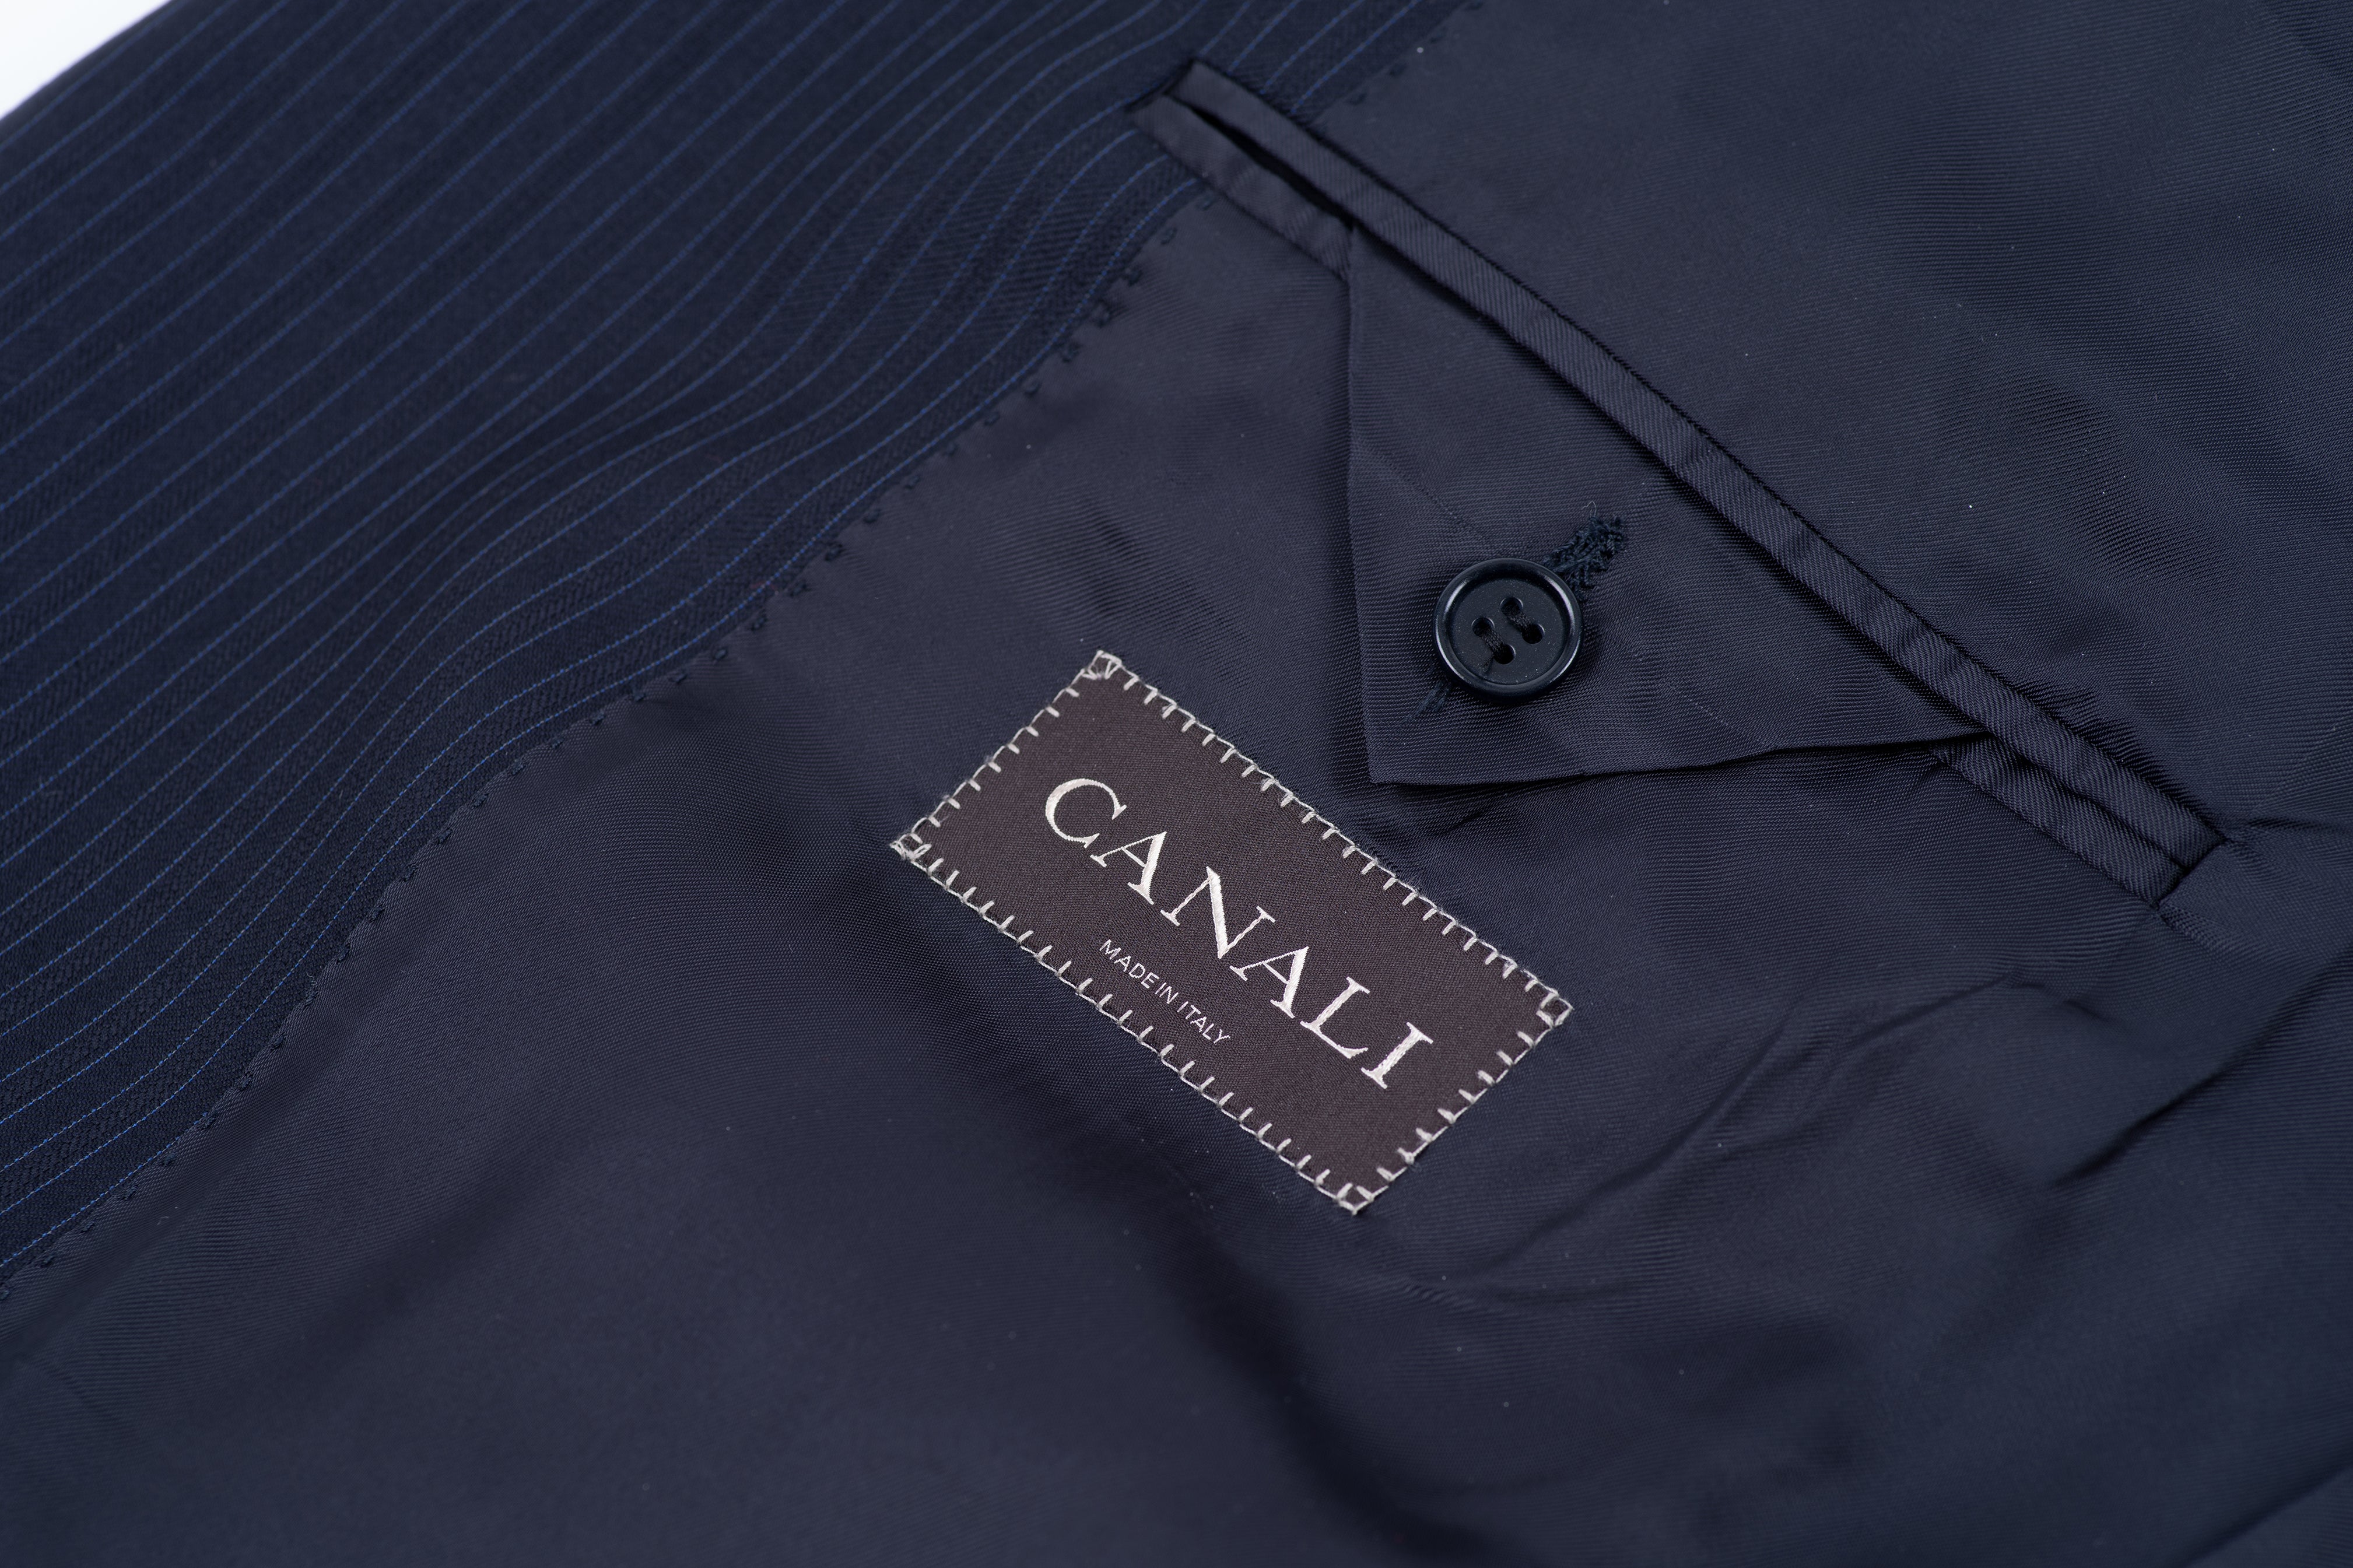 Canali Navy Blue Wool Striped Blazer Jacket, SIZE US 48R, EU 58R